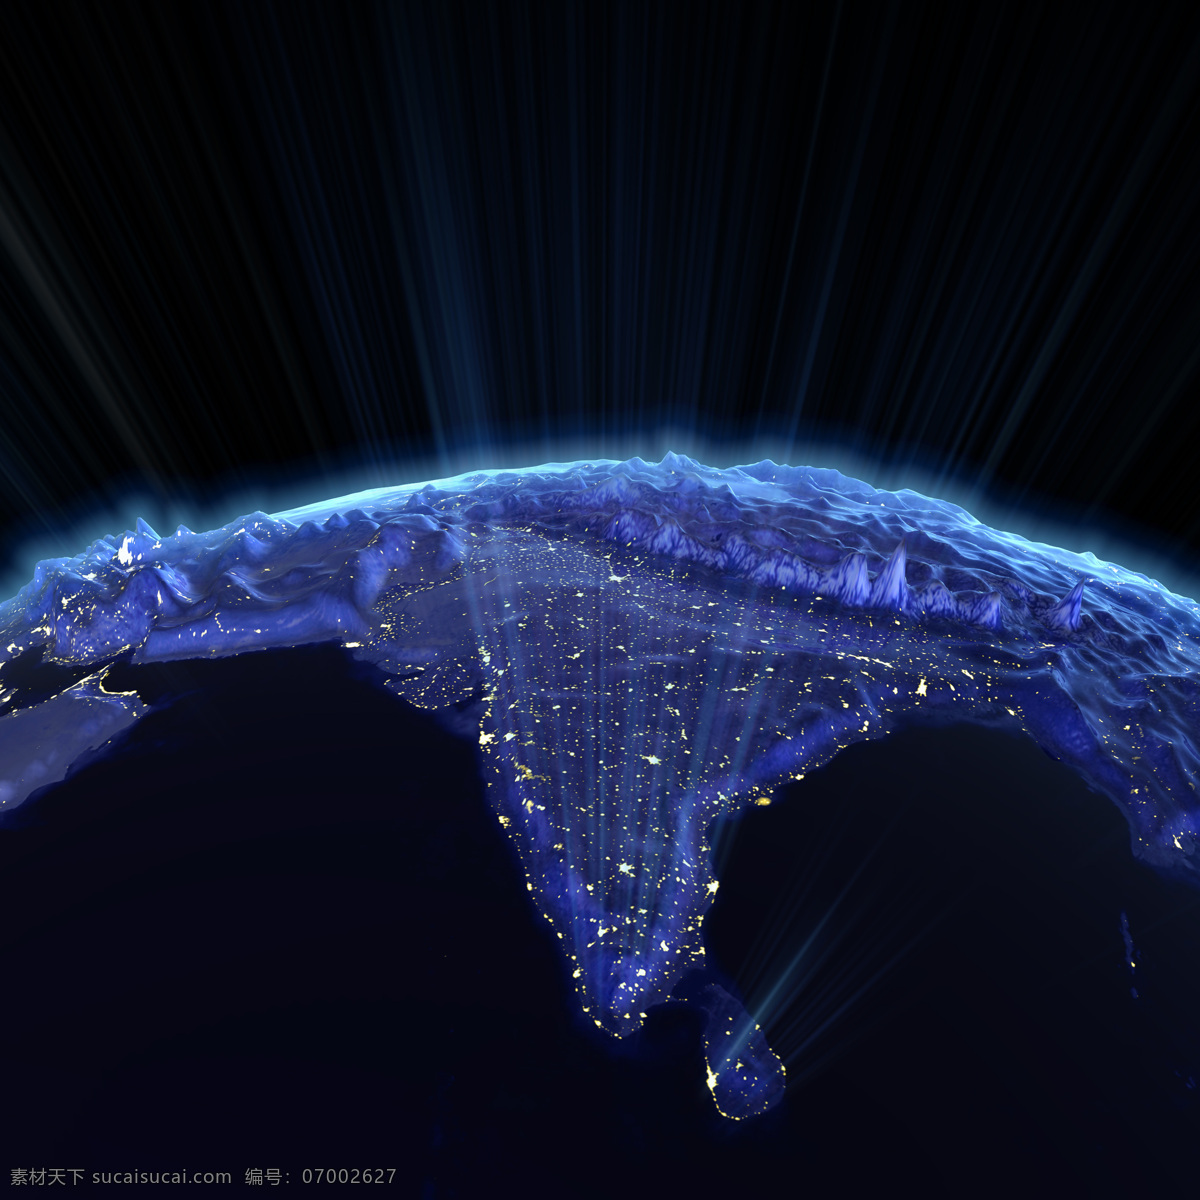 地球 上 散发 光芒 印度 散发光芒 大陆 宇宙太空 现代科技 地球图片 环境家居